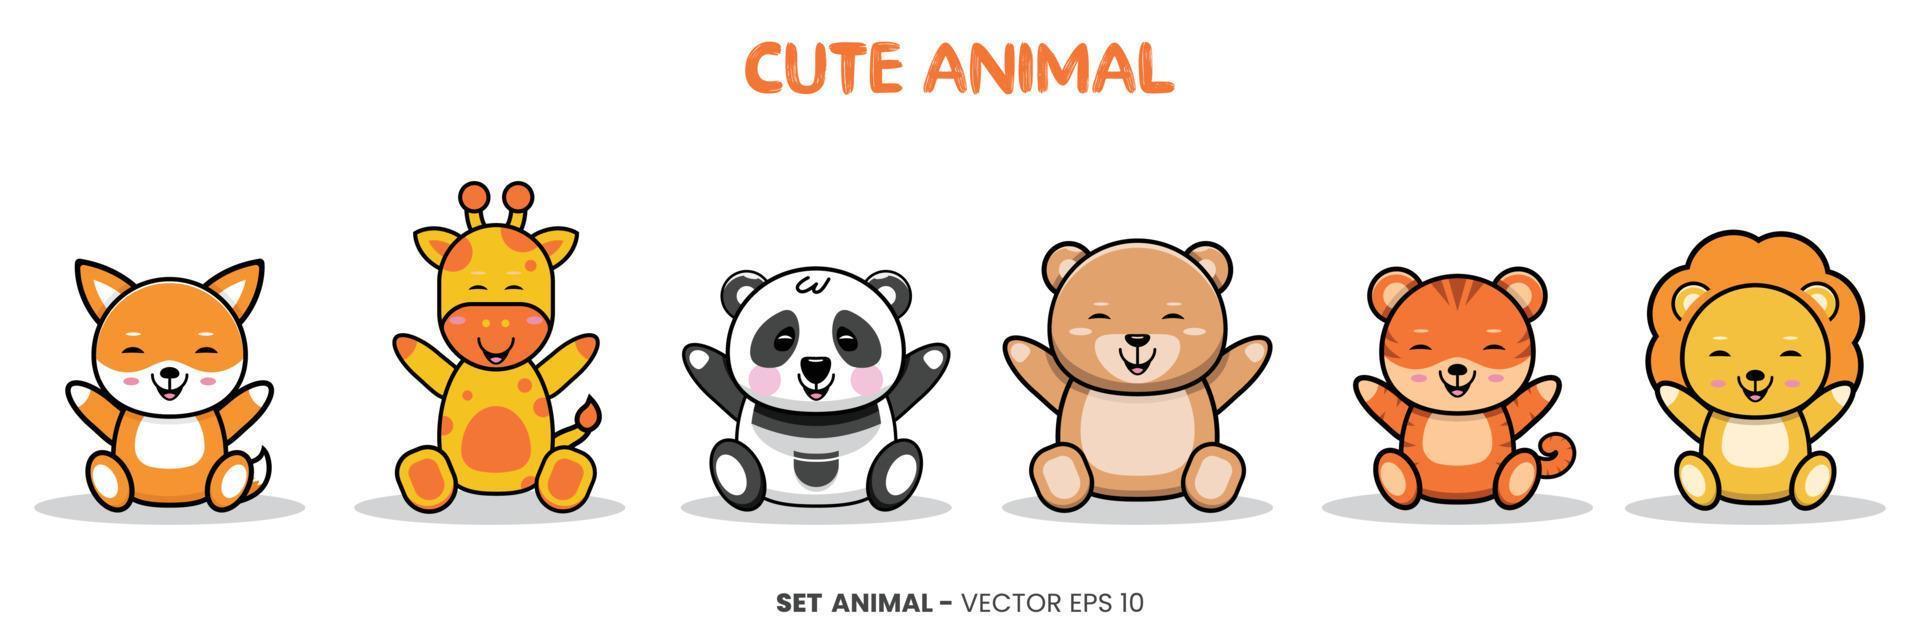 Illustration med barntema med söta djurkaraktärer - giraff, panda, björn, tiger, lejon och räv som sitter med ett glatt uttryck och ler. vektor